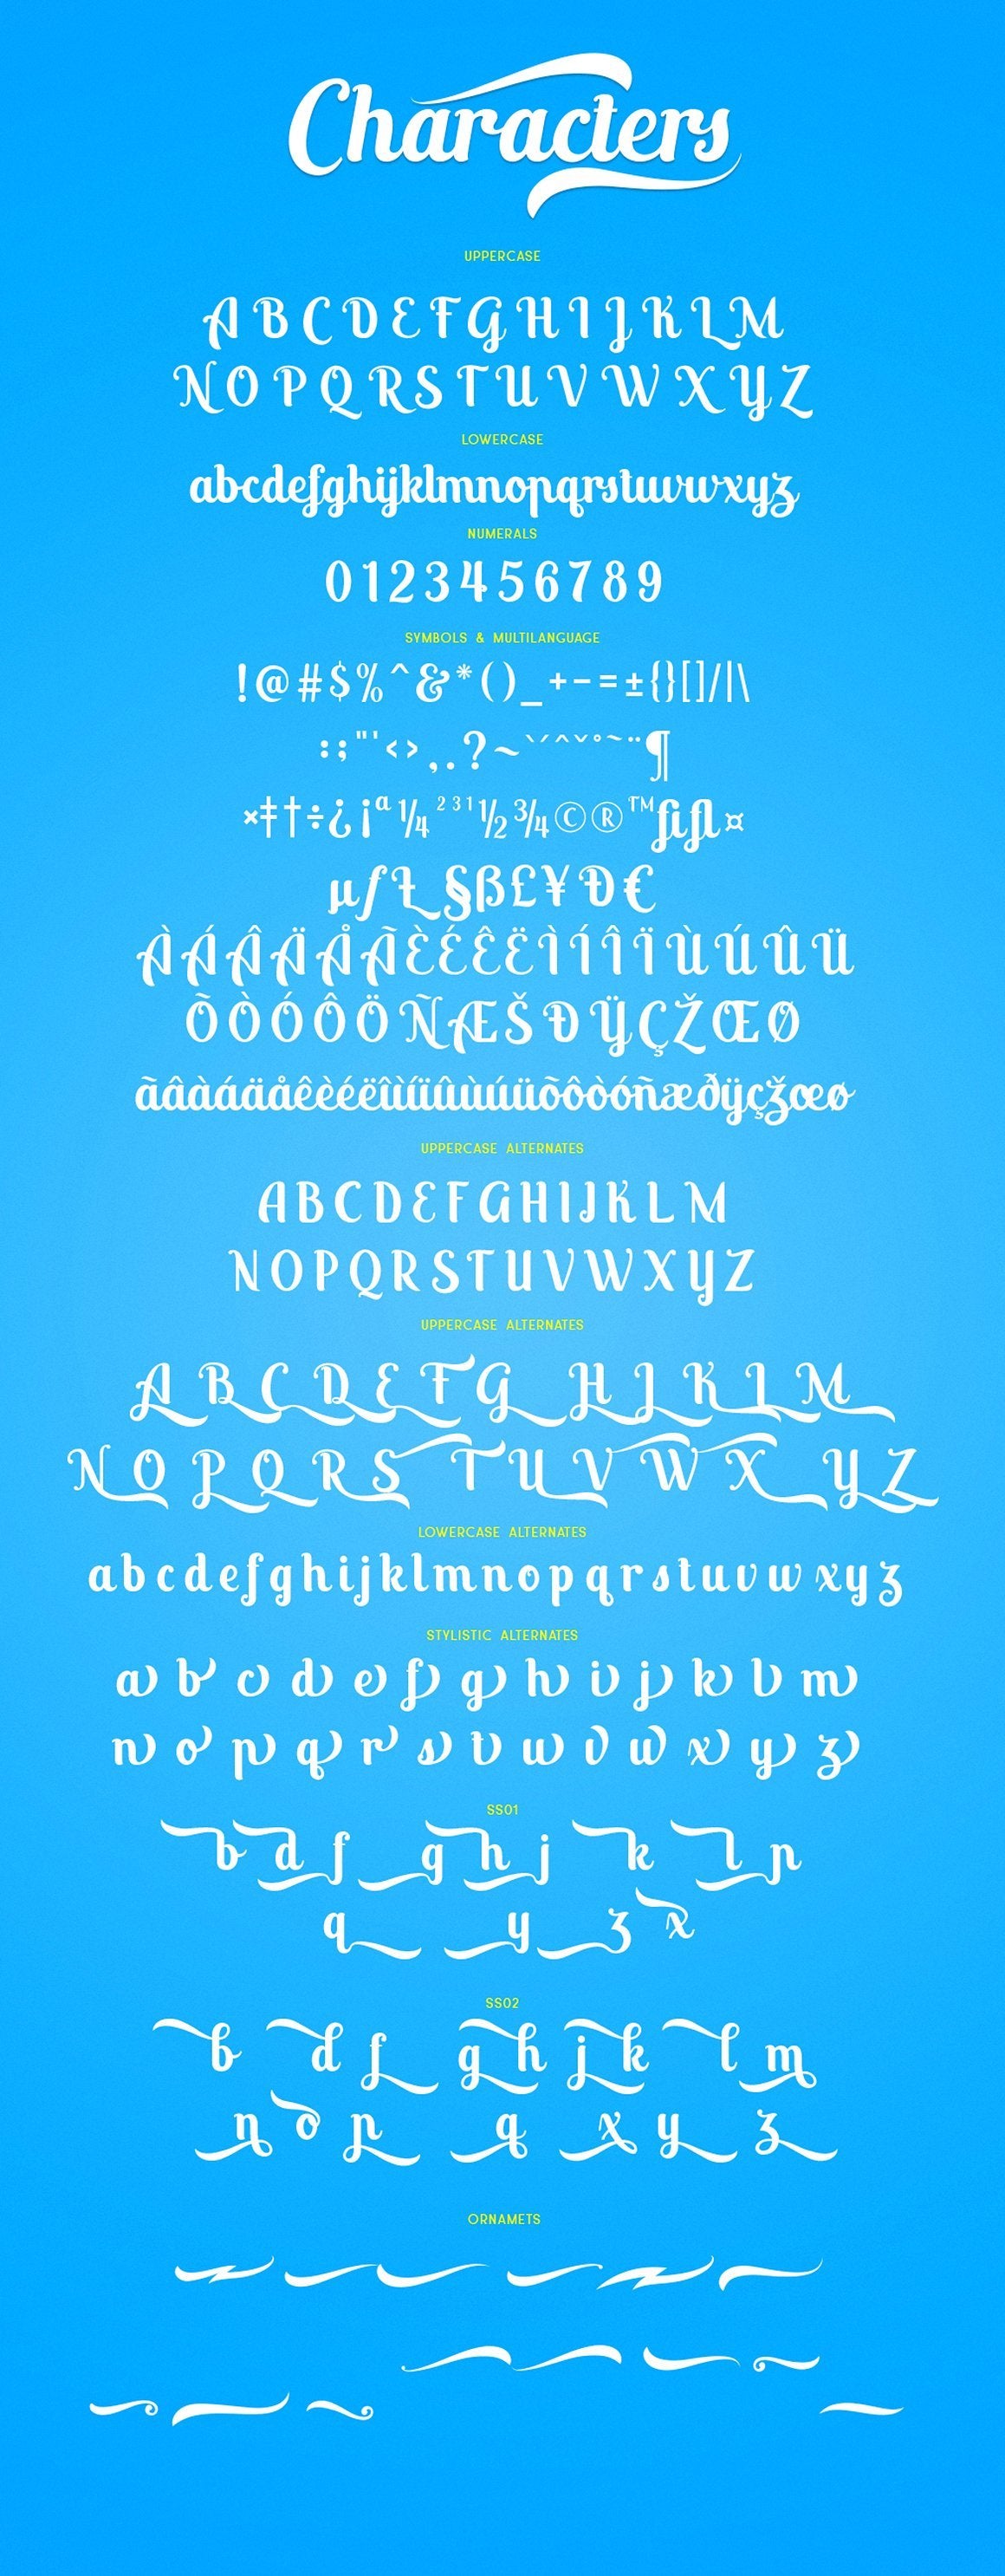 Free Altoys Typeface